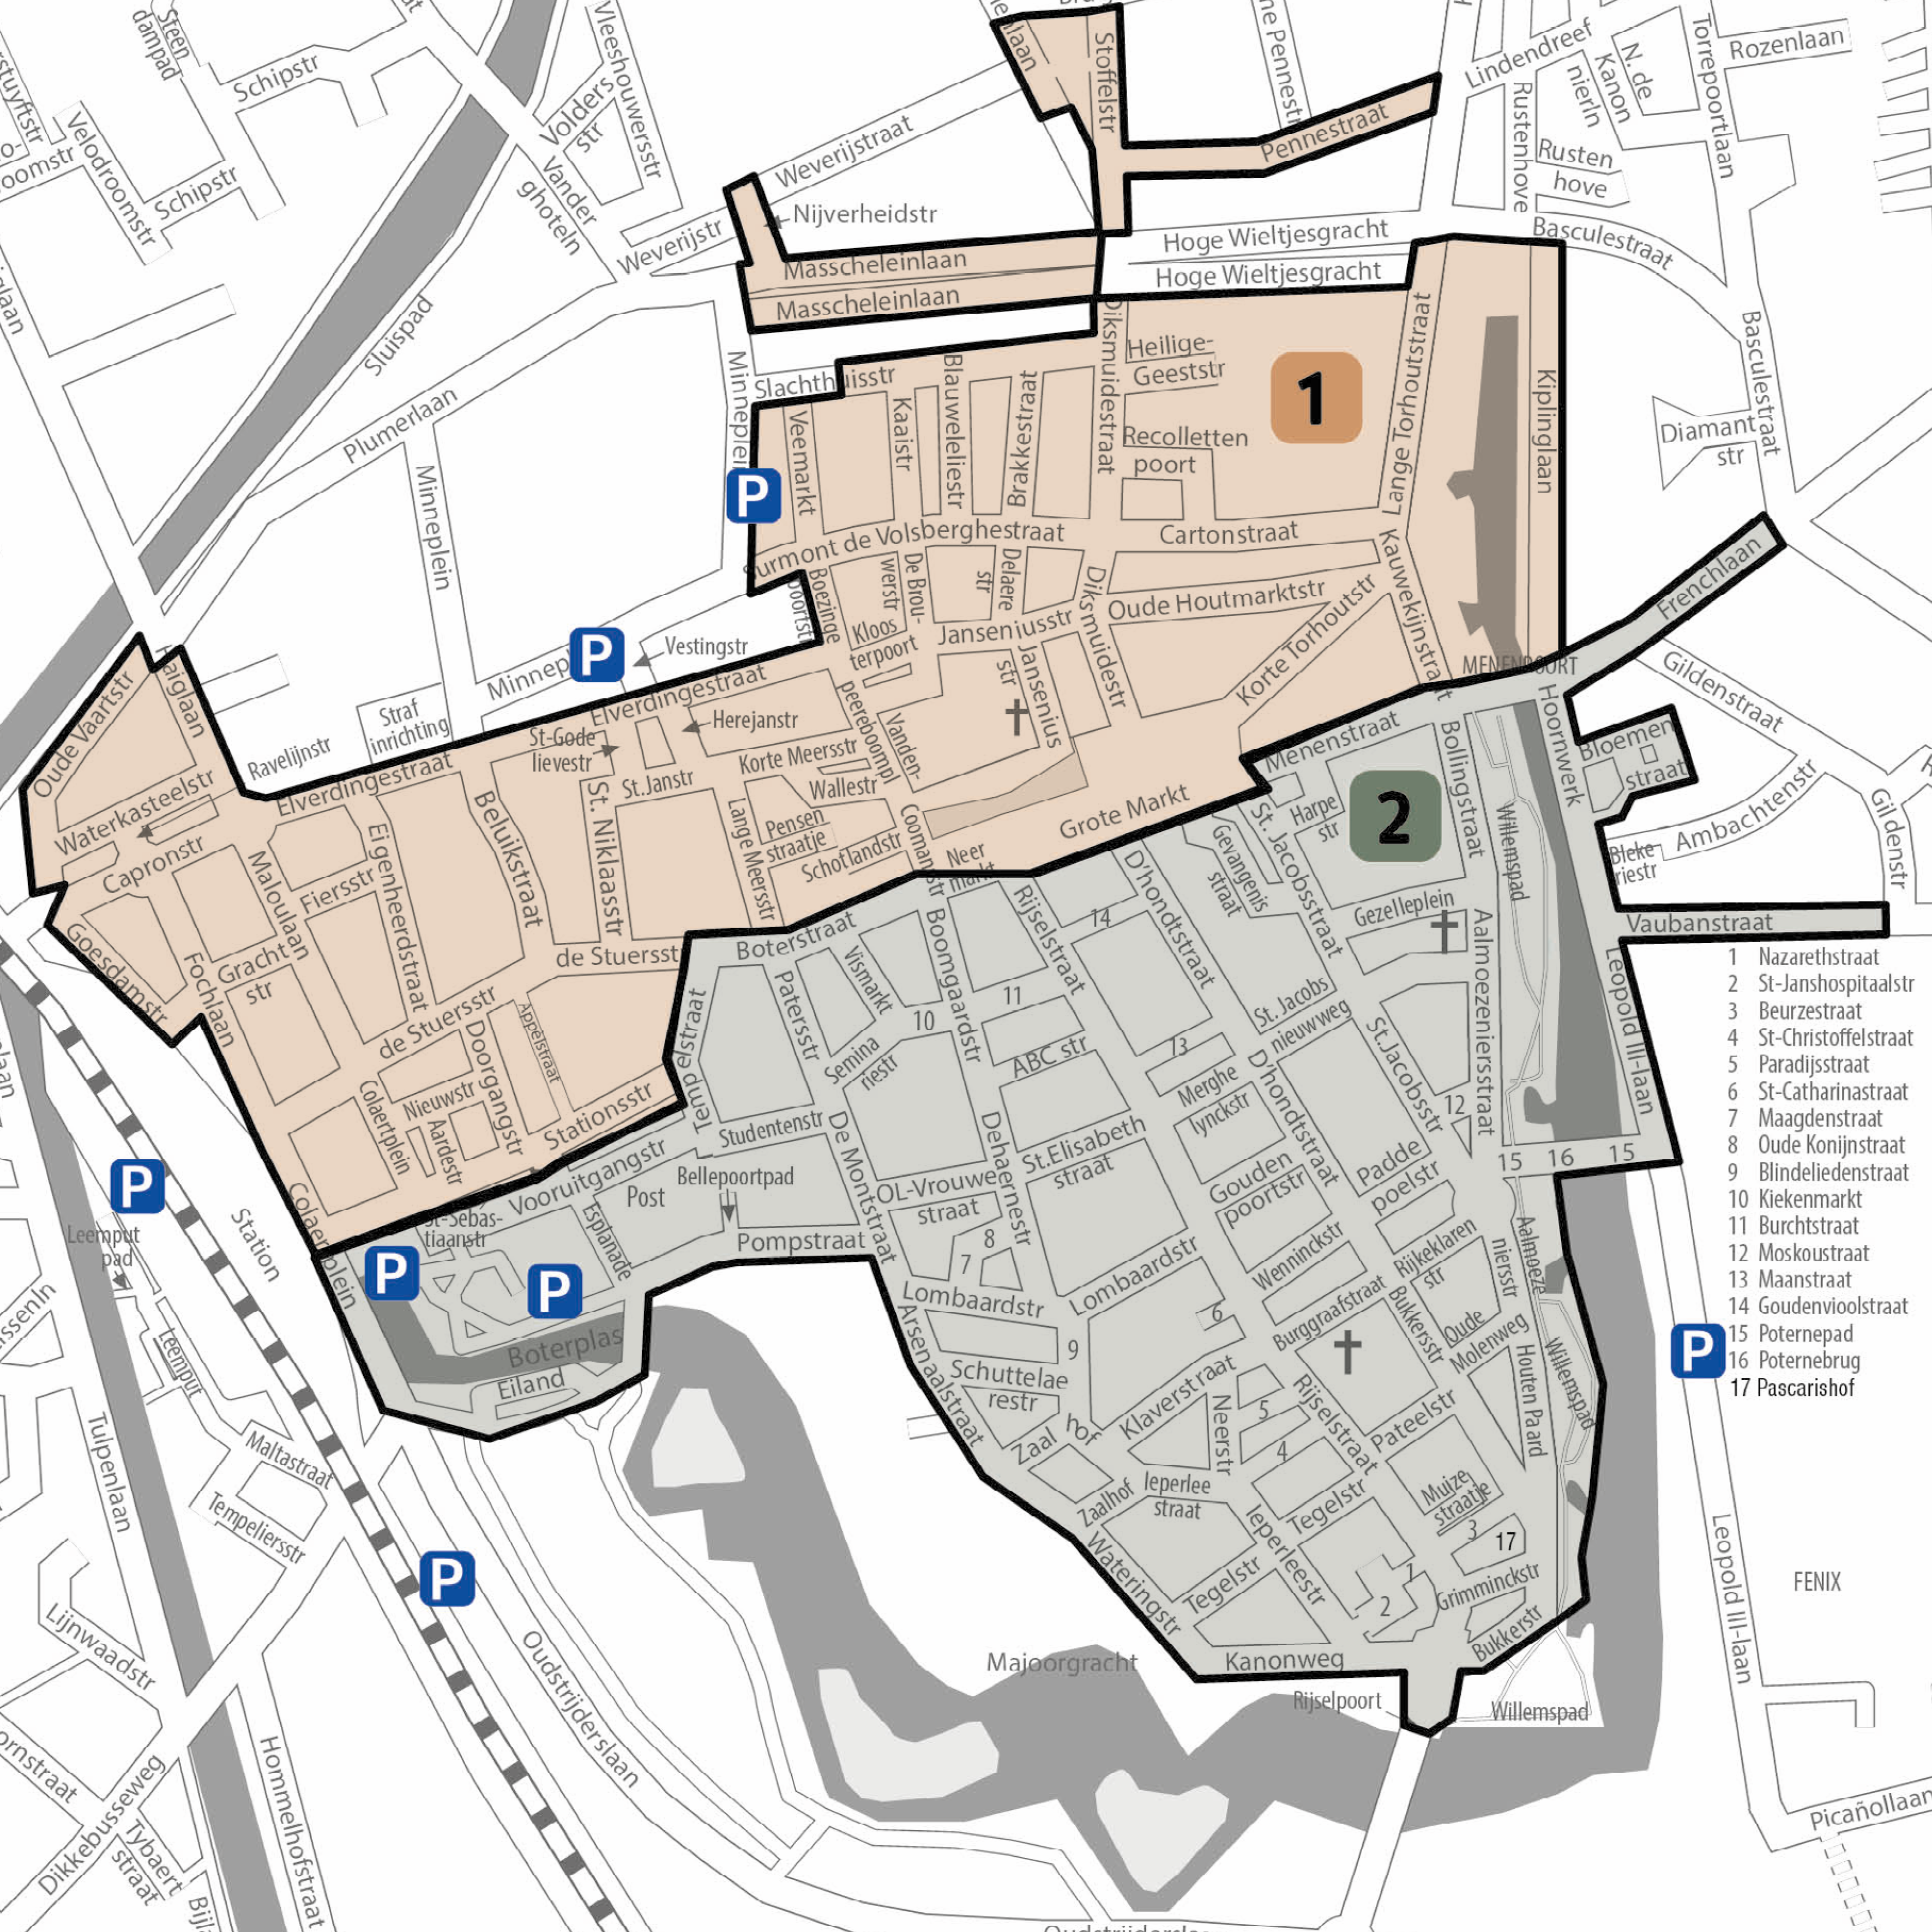 Plan met 2 bewonerszones parkeerplan Ieper